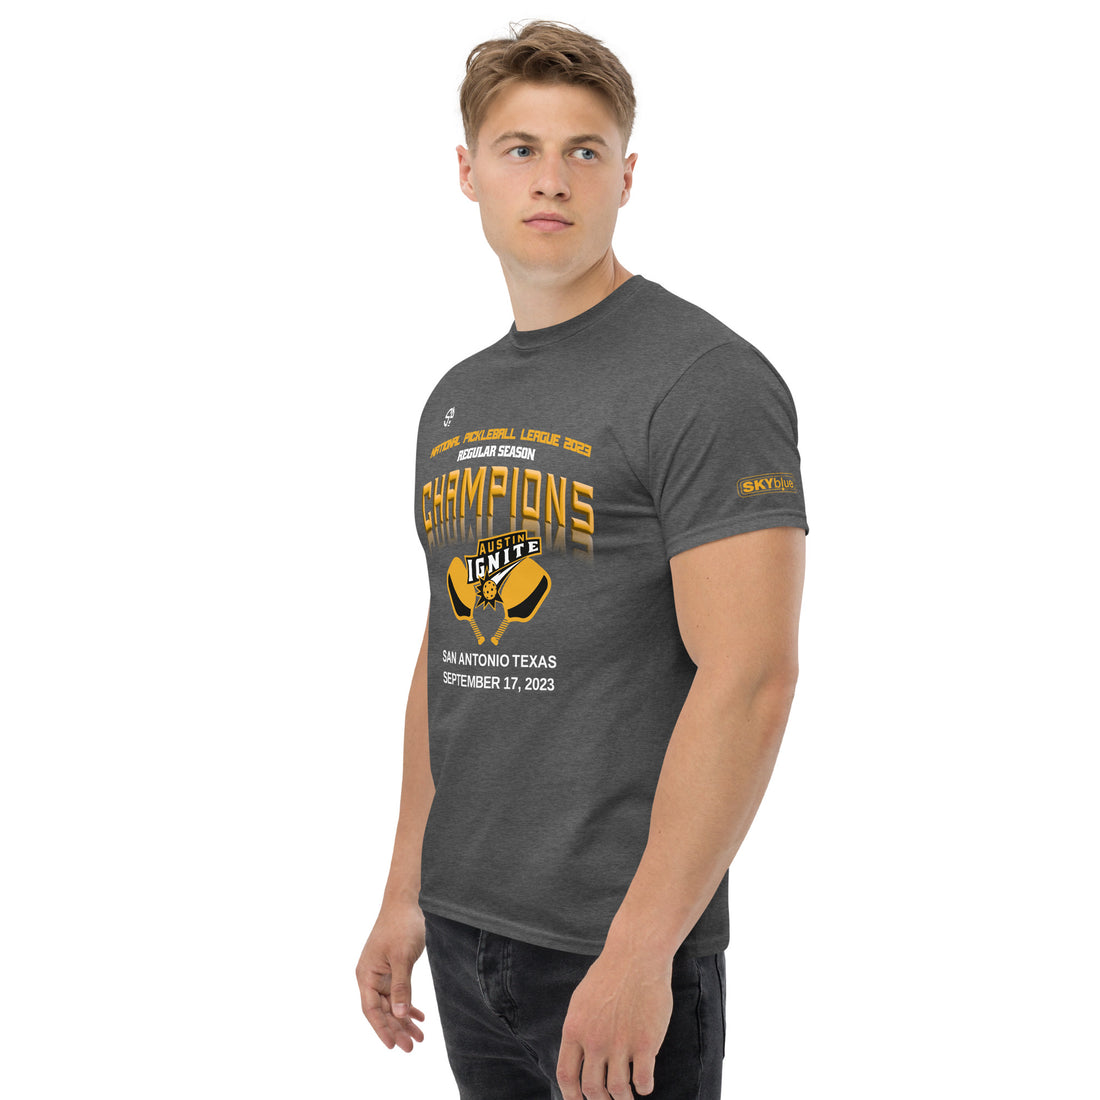 Austin Ignite™ NPL™ Regular Season Pickleball Championship Fan Shirt for Men